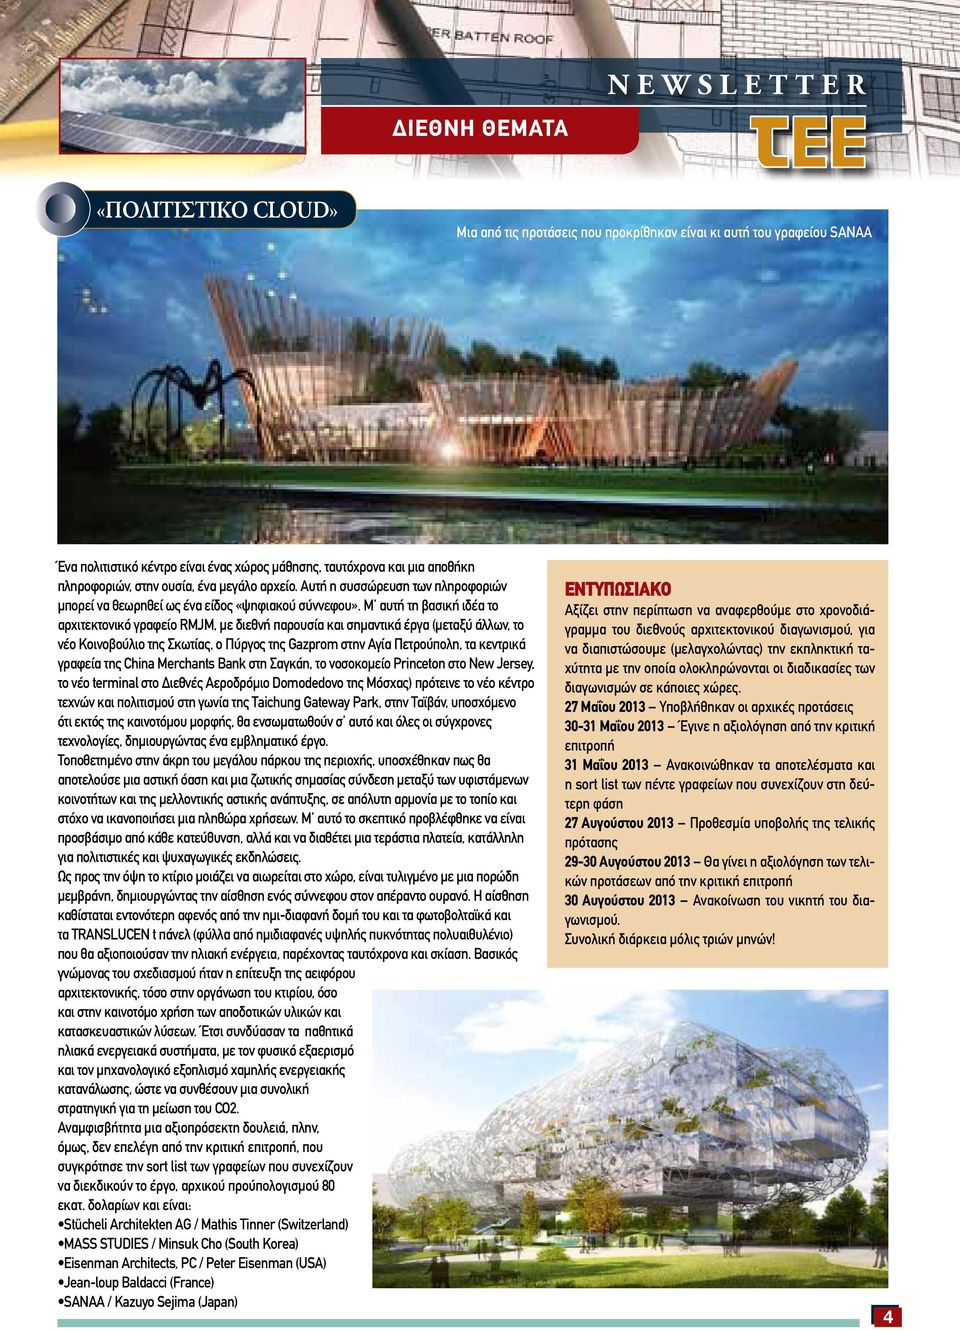 Μ αυτή τη βασική ιδέα το αρχιτεκτονικό γραφείο RMJM, με διεθνή παρουσία και σημαντικά έργα (μεταξύ άλλων, το νέο Κοινοβούλιο της Σκωτίας, ο Πύργος της Gazprom στην Αγία Πετρούπολη, τα κεντρικά